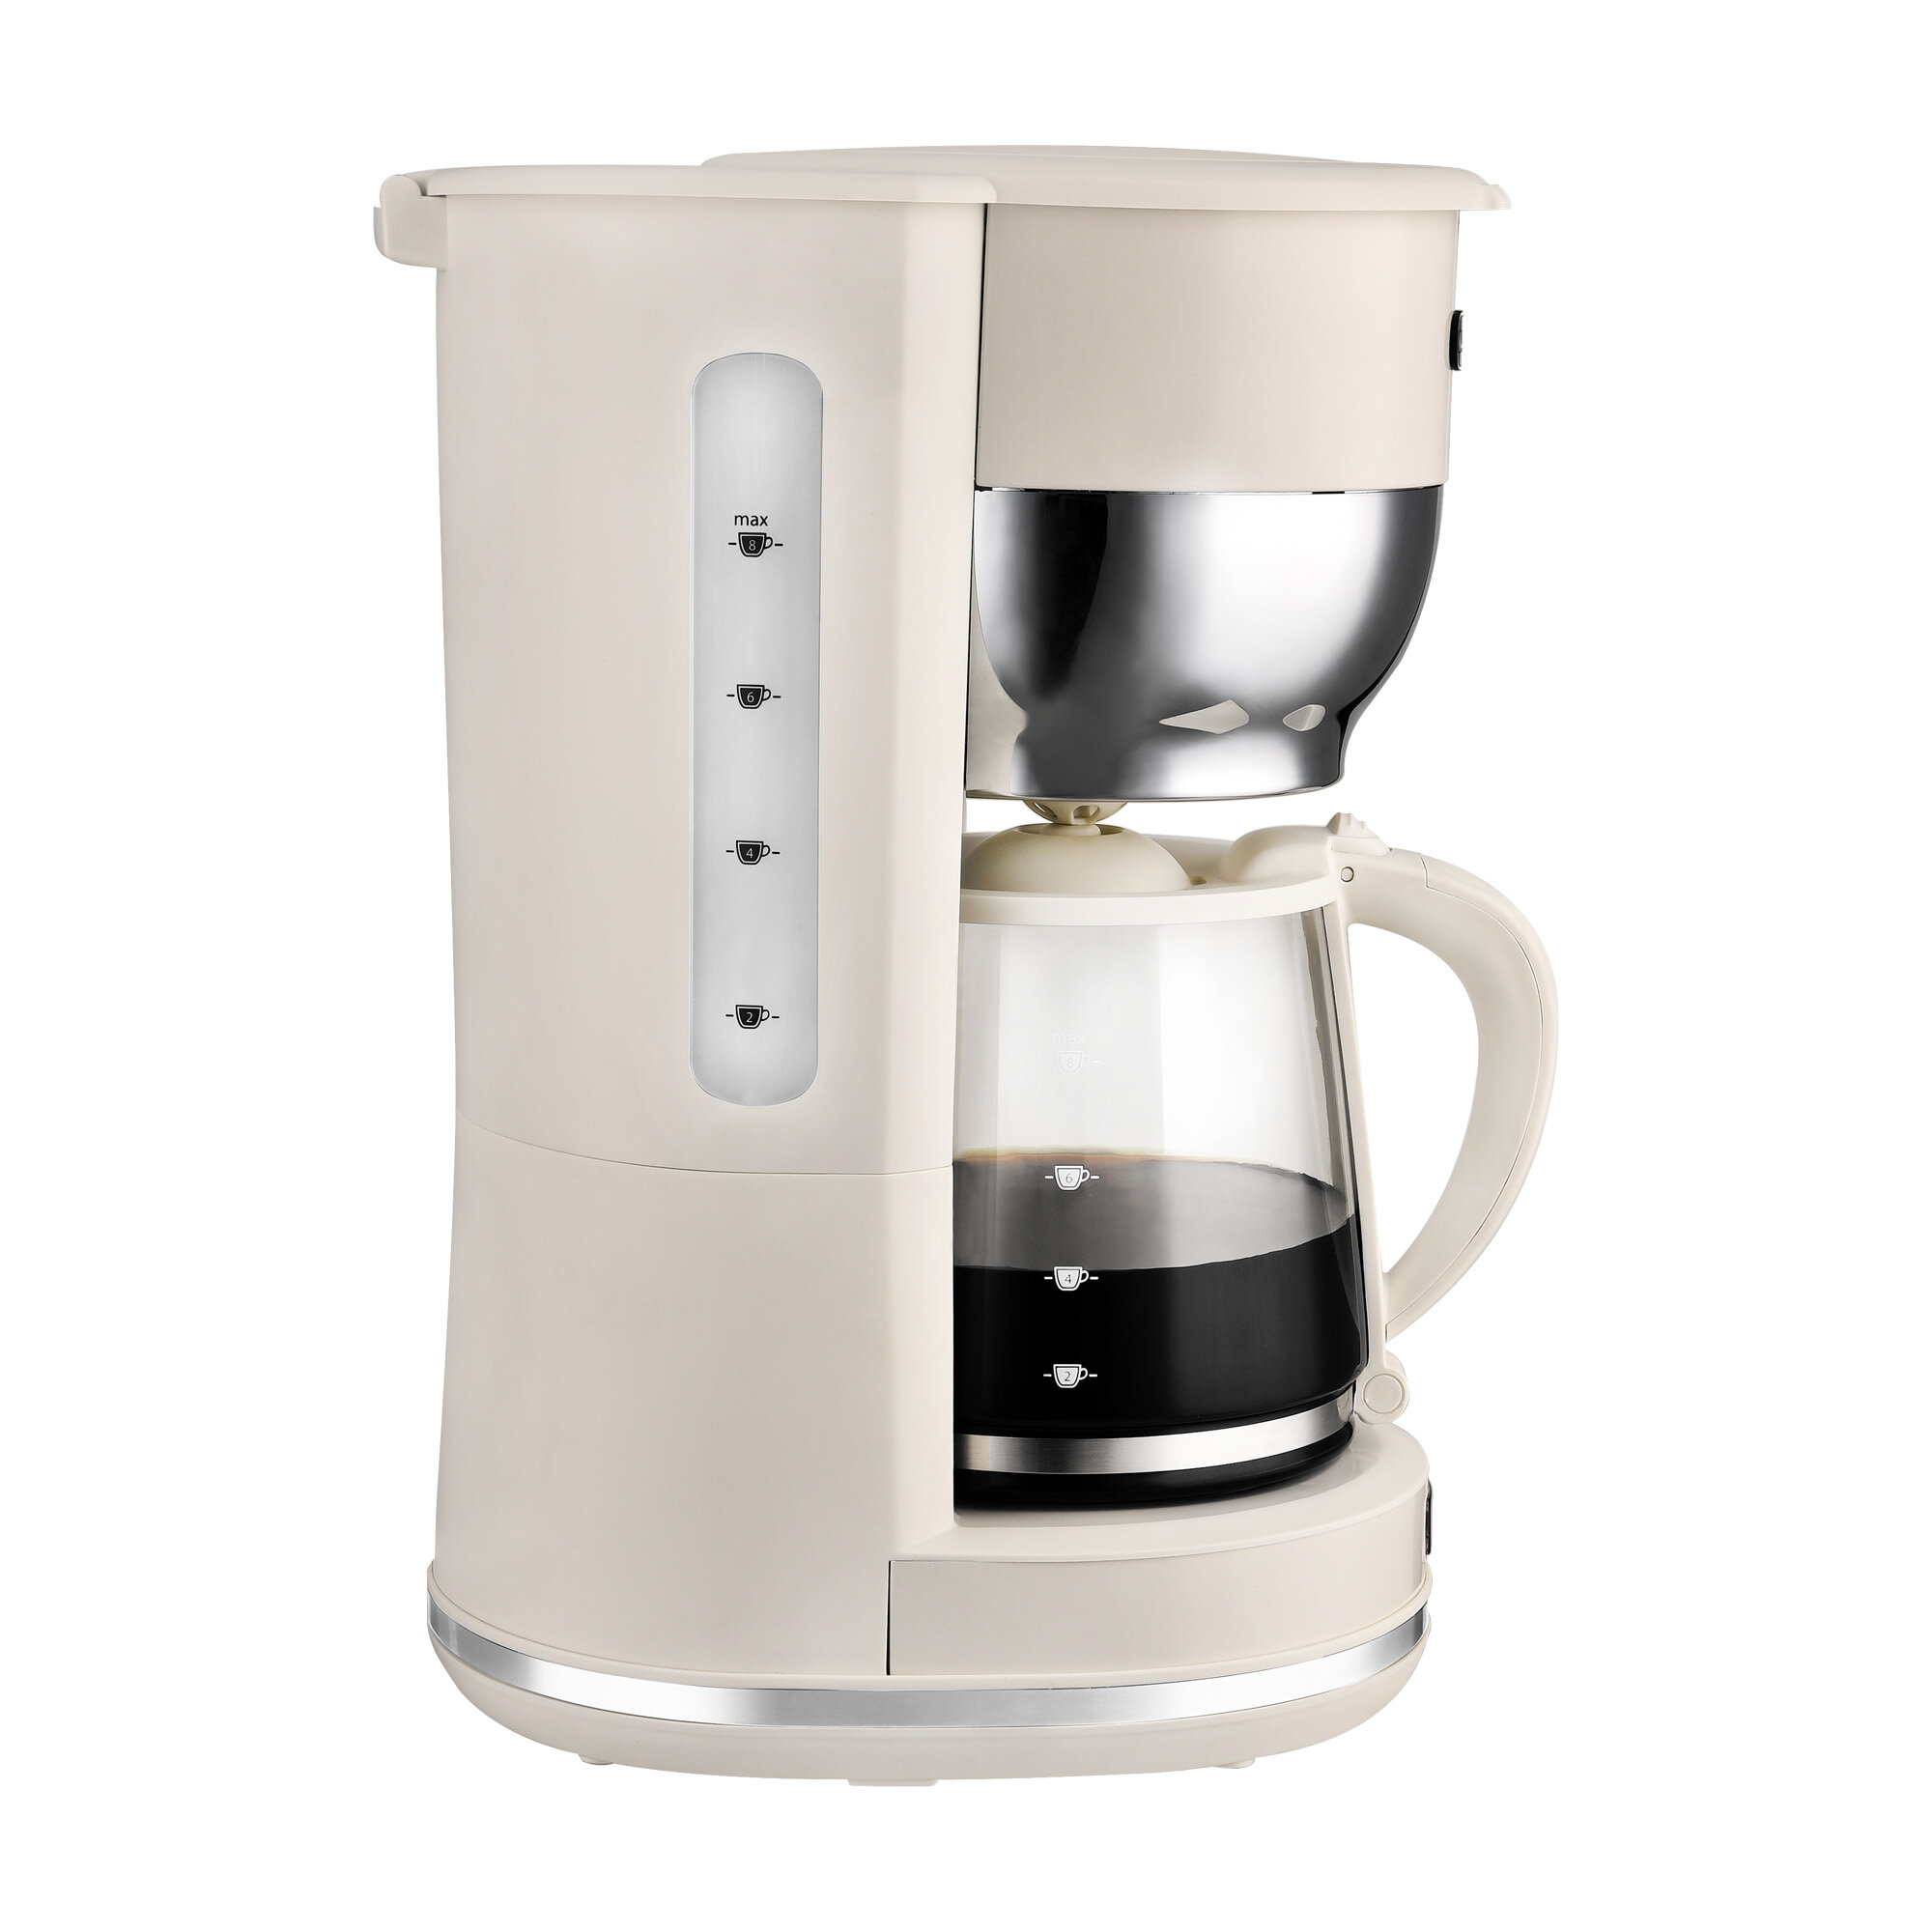 https://assets.wfcdn.com/im/46944158/compr-r85/1738/173855393/kalorik-10-cup-coffee-maker.jpg